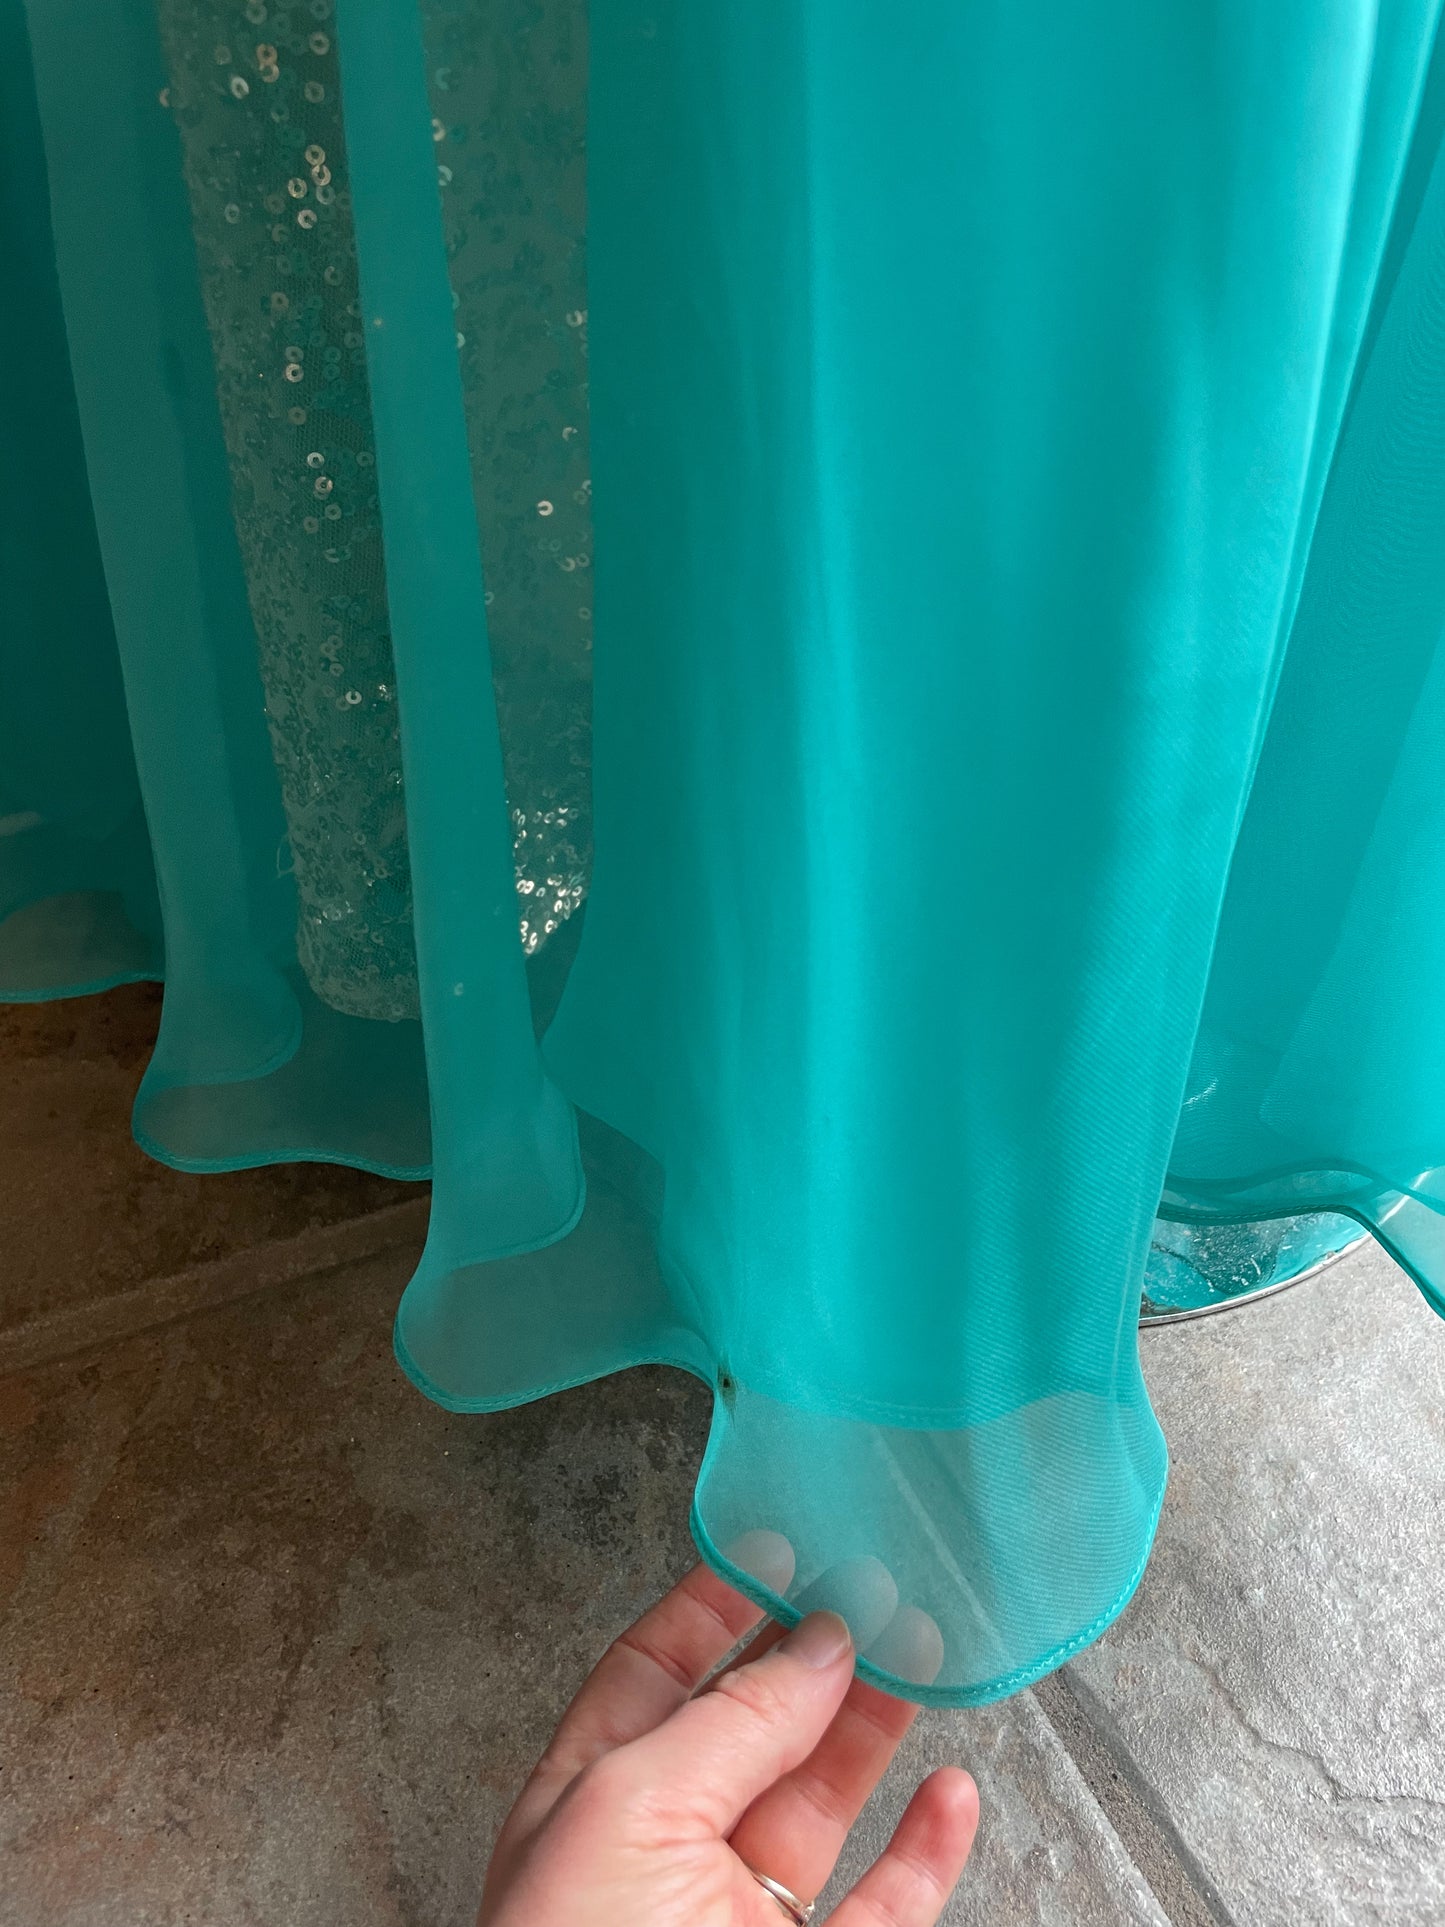 La Femme Champagne Sequin Strapless Turquoise Chiffon Flutter Hem Maxi Dress - Size 4